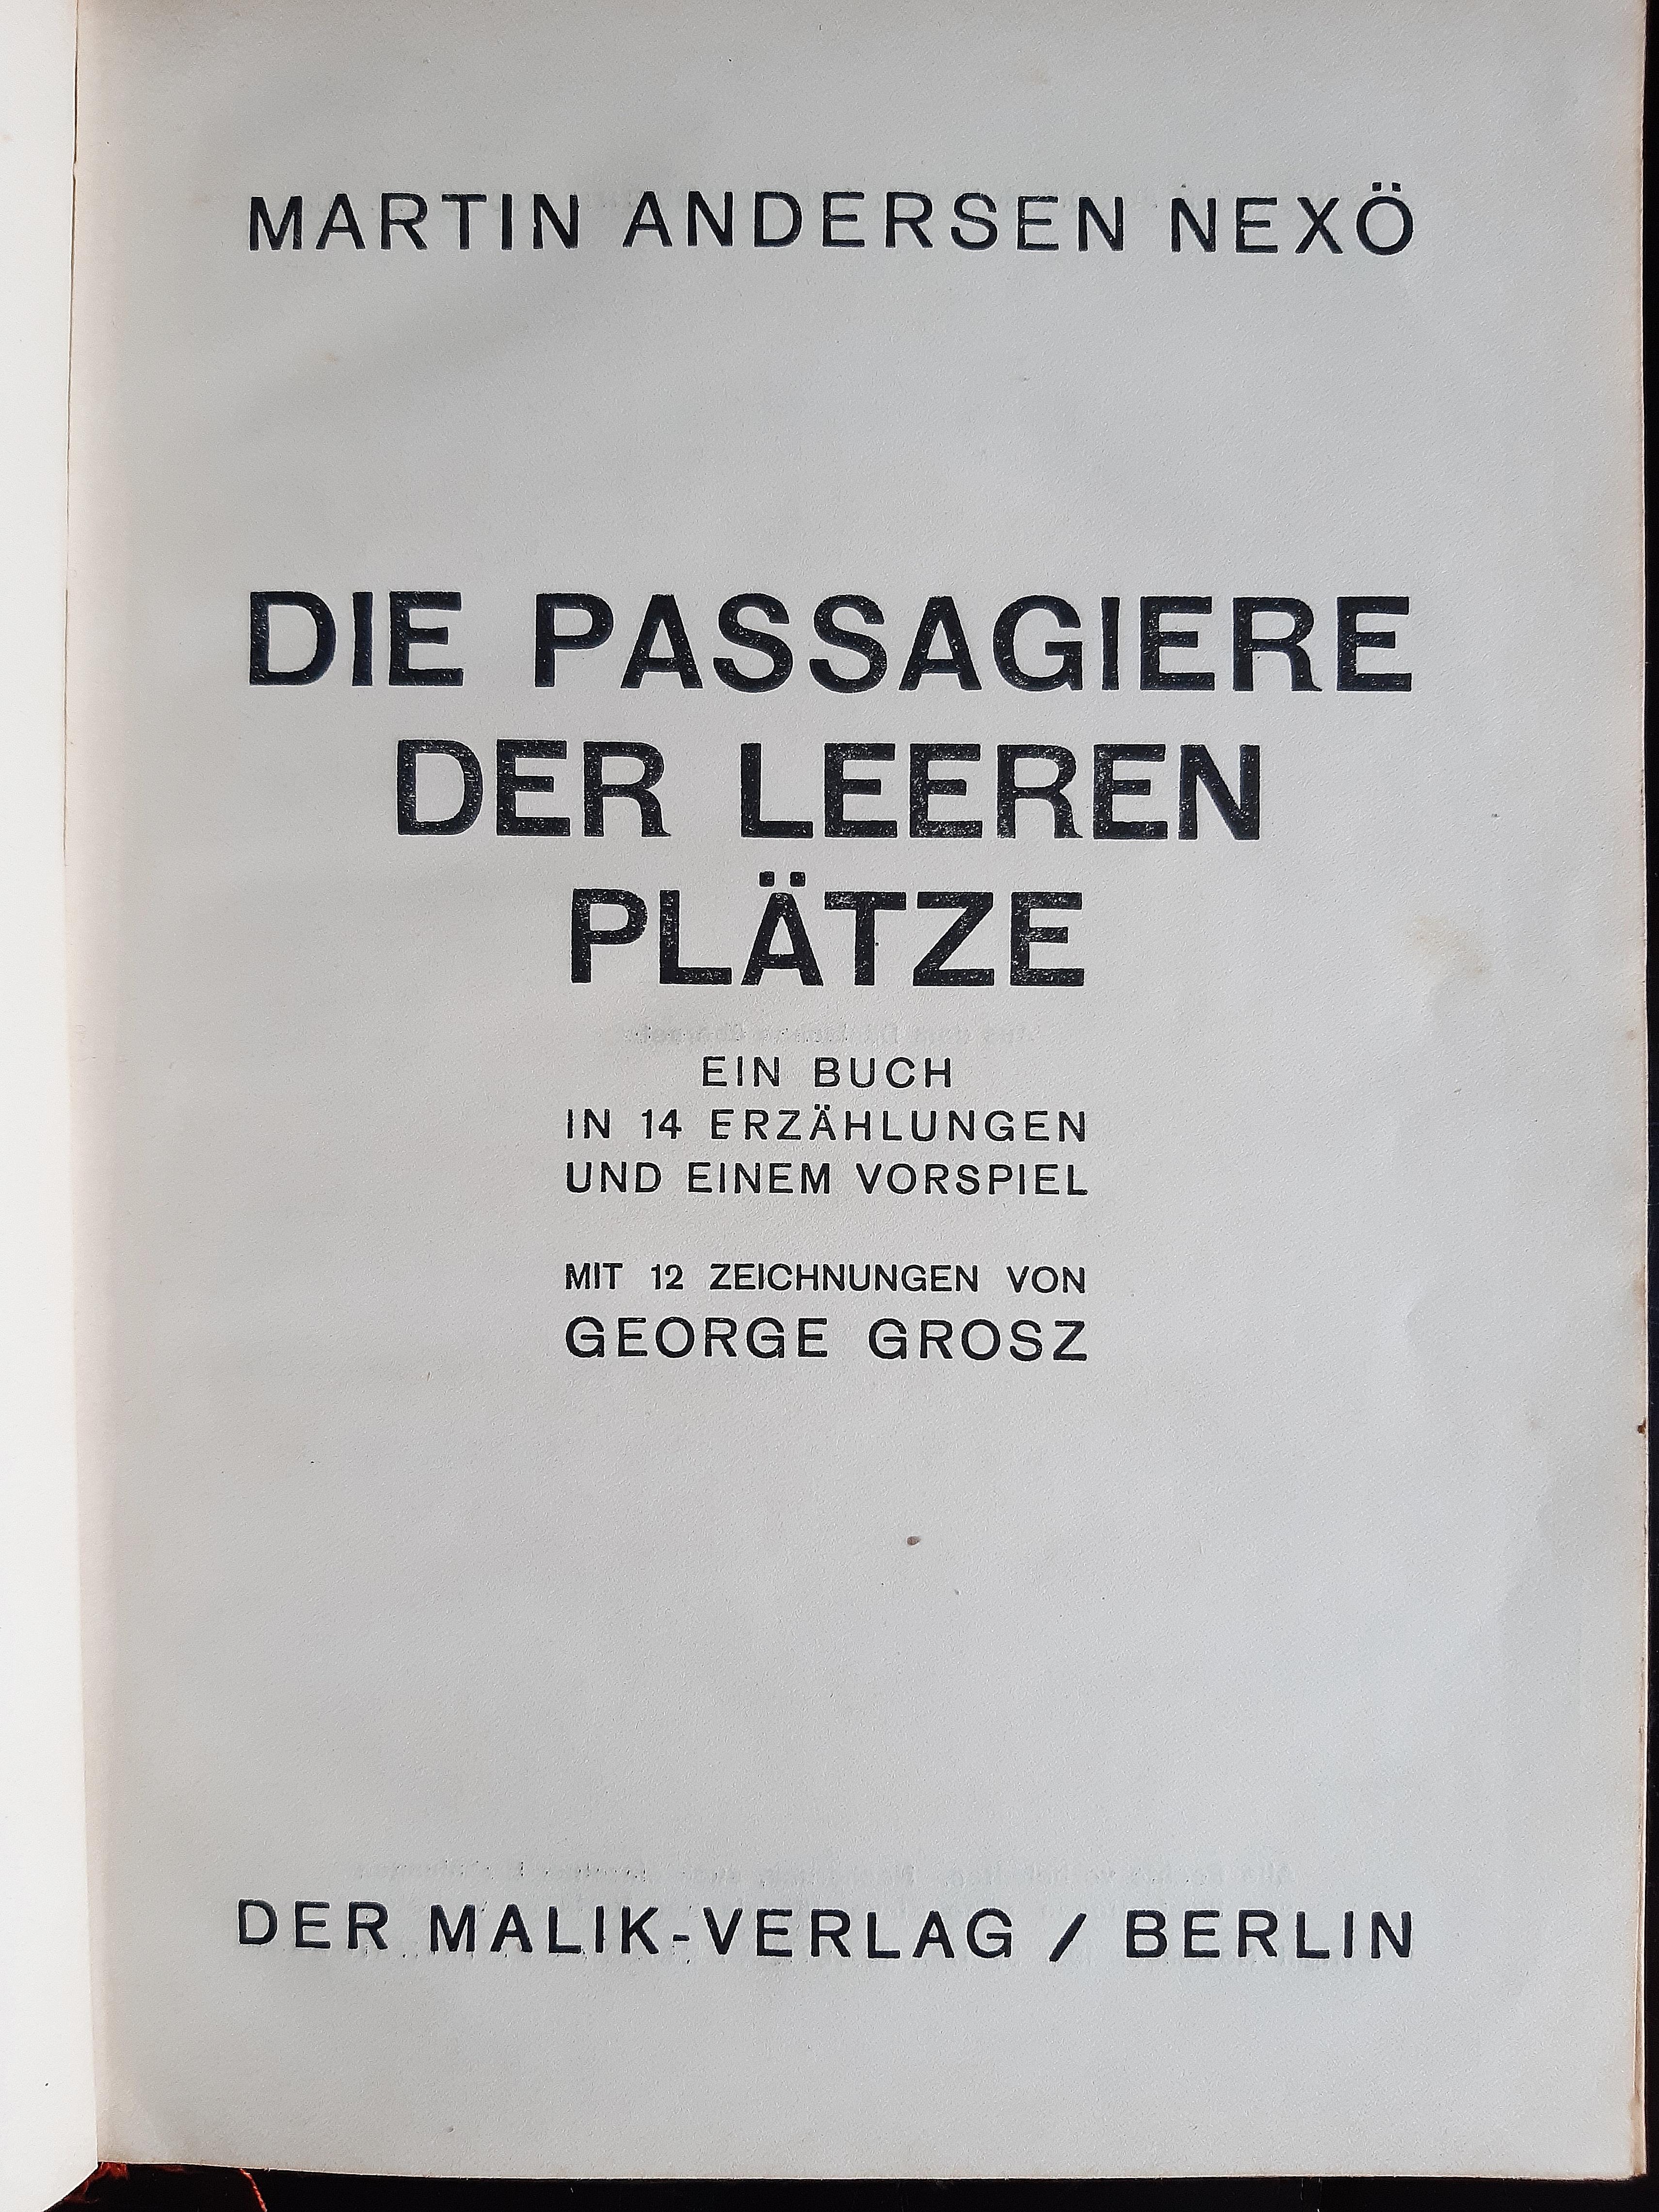 Die Passagiere der leeren Platze - Rare Book Illustrated by George Grosz - 1921 For Sale 6